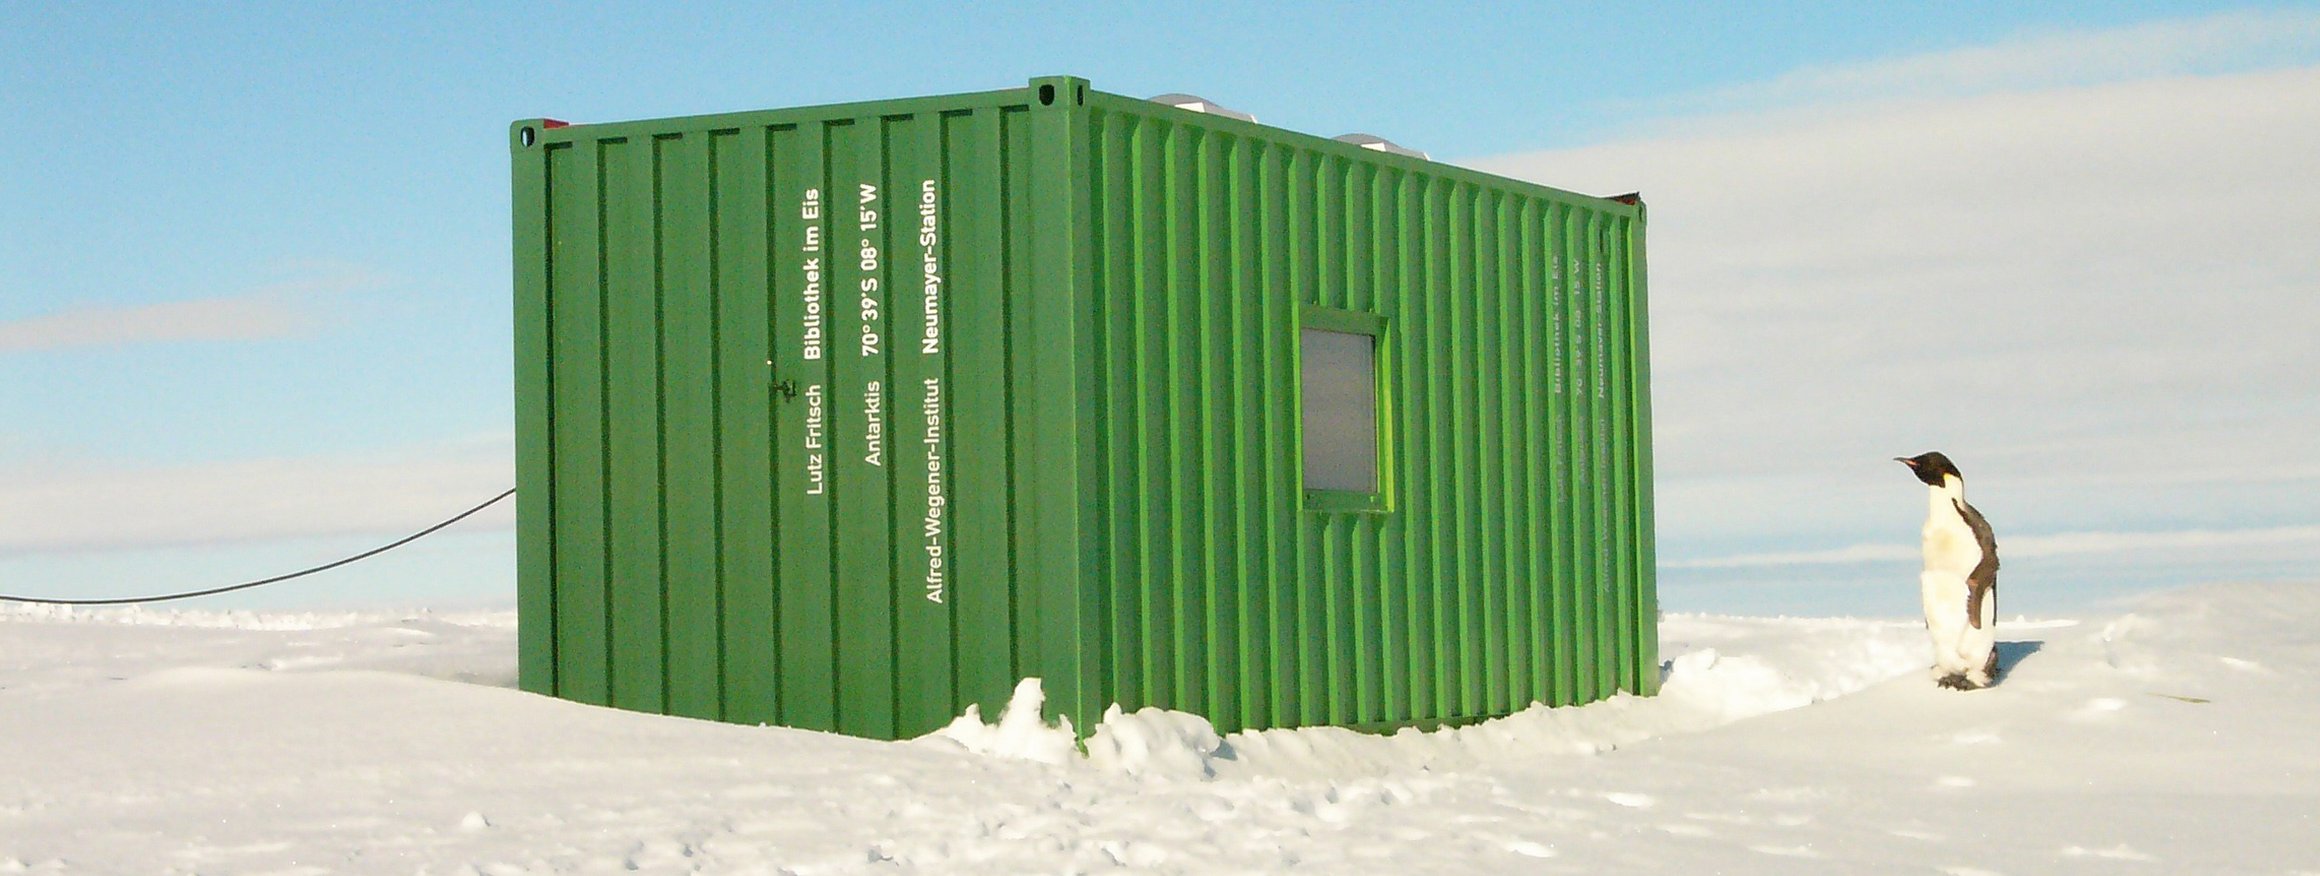 Ein Pinguin steht an einem grünen Container der Neumayer-Station in der Antarktis